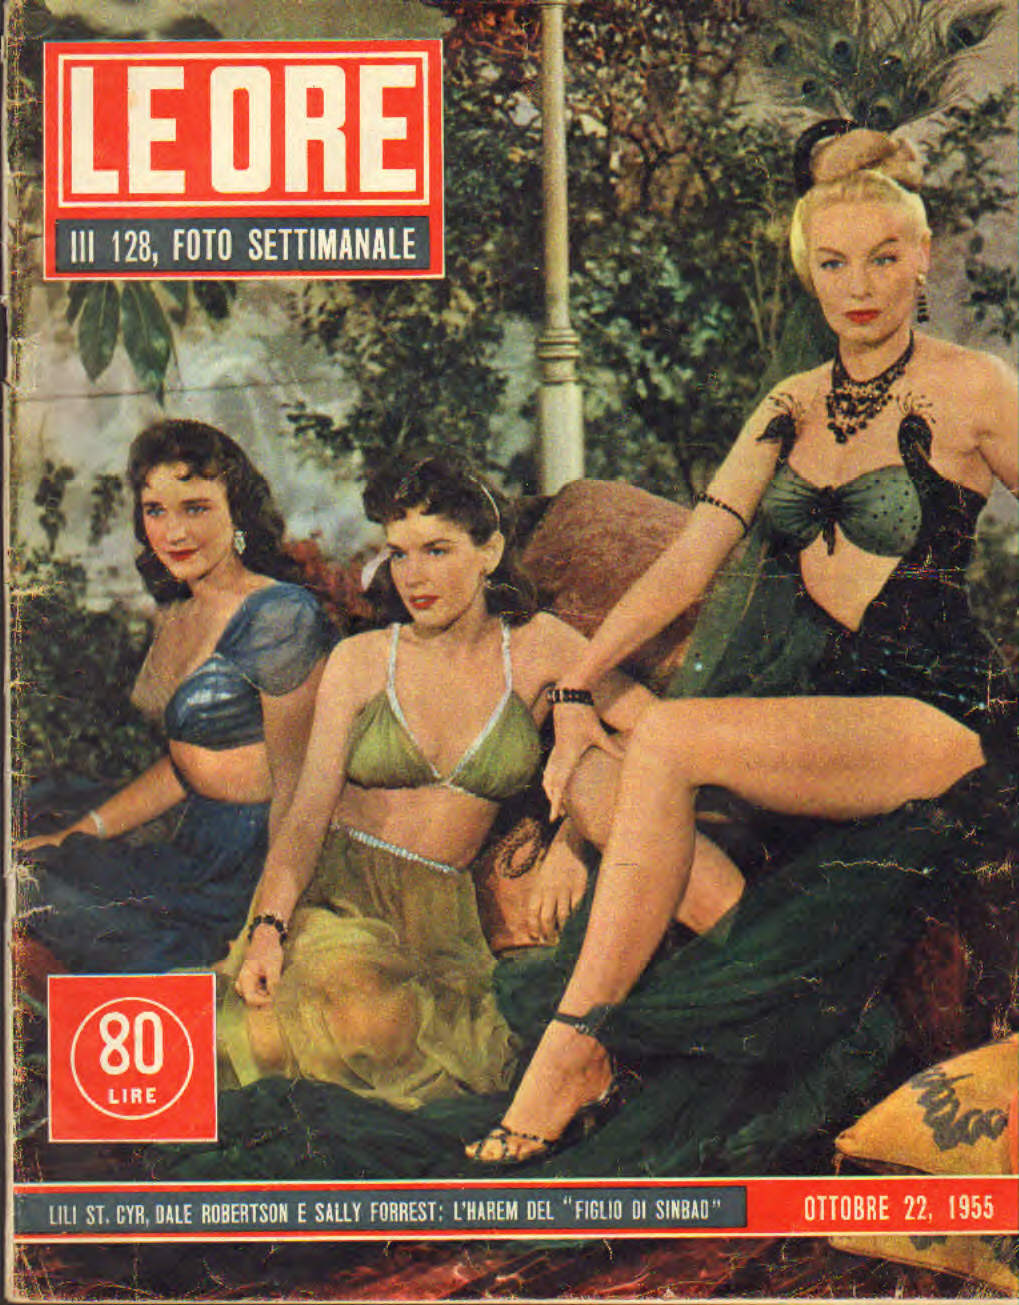 Le ore anno III n.128 del 22 ottobre 1955 (rivista per adulti)